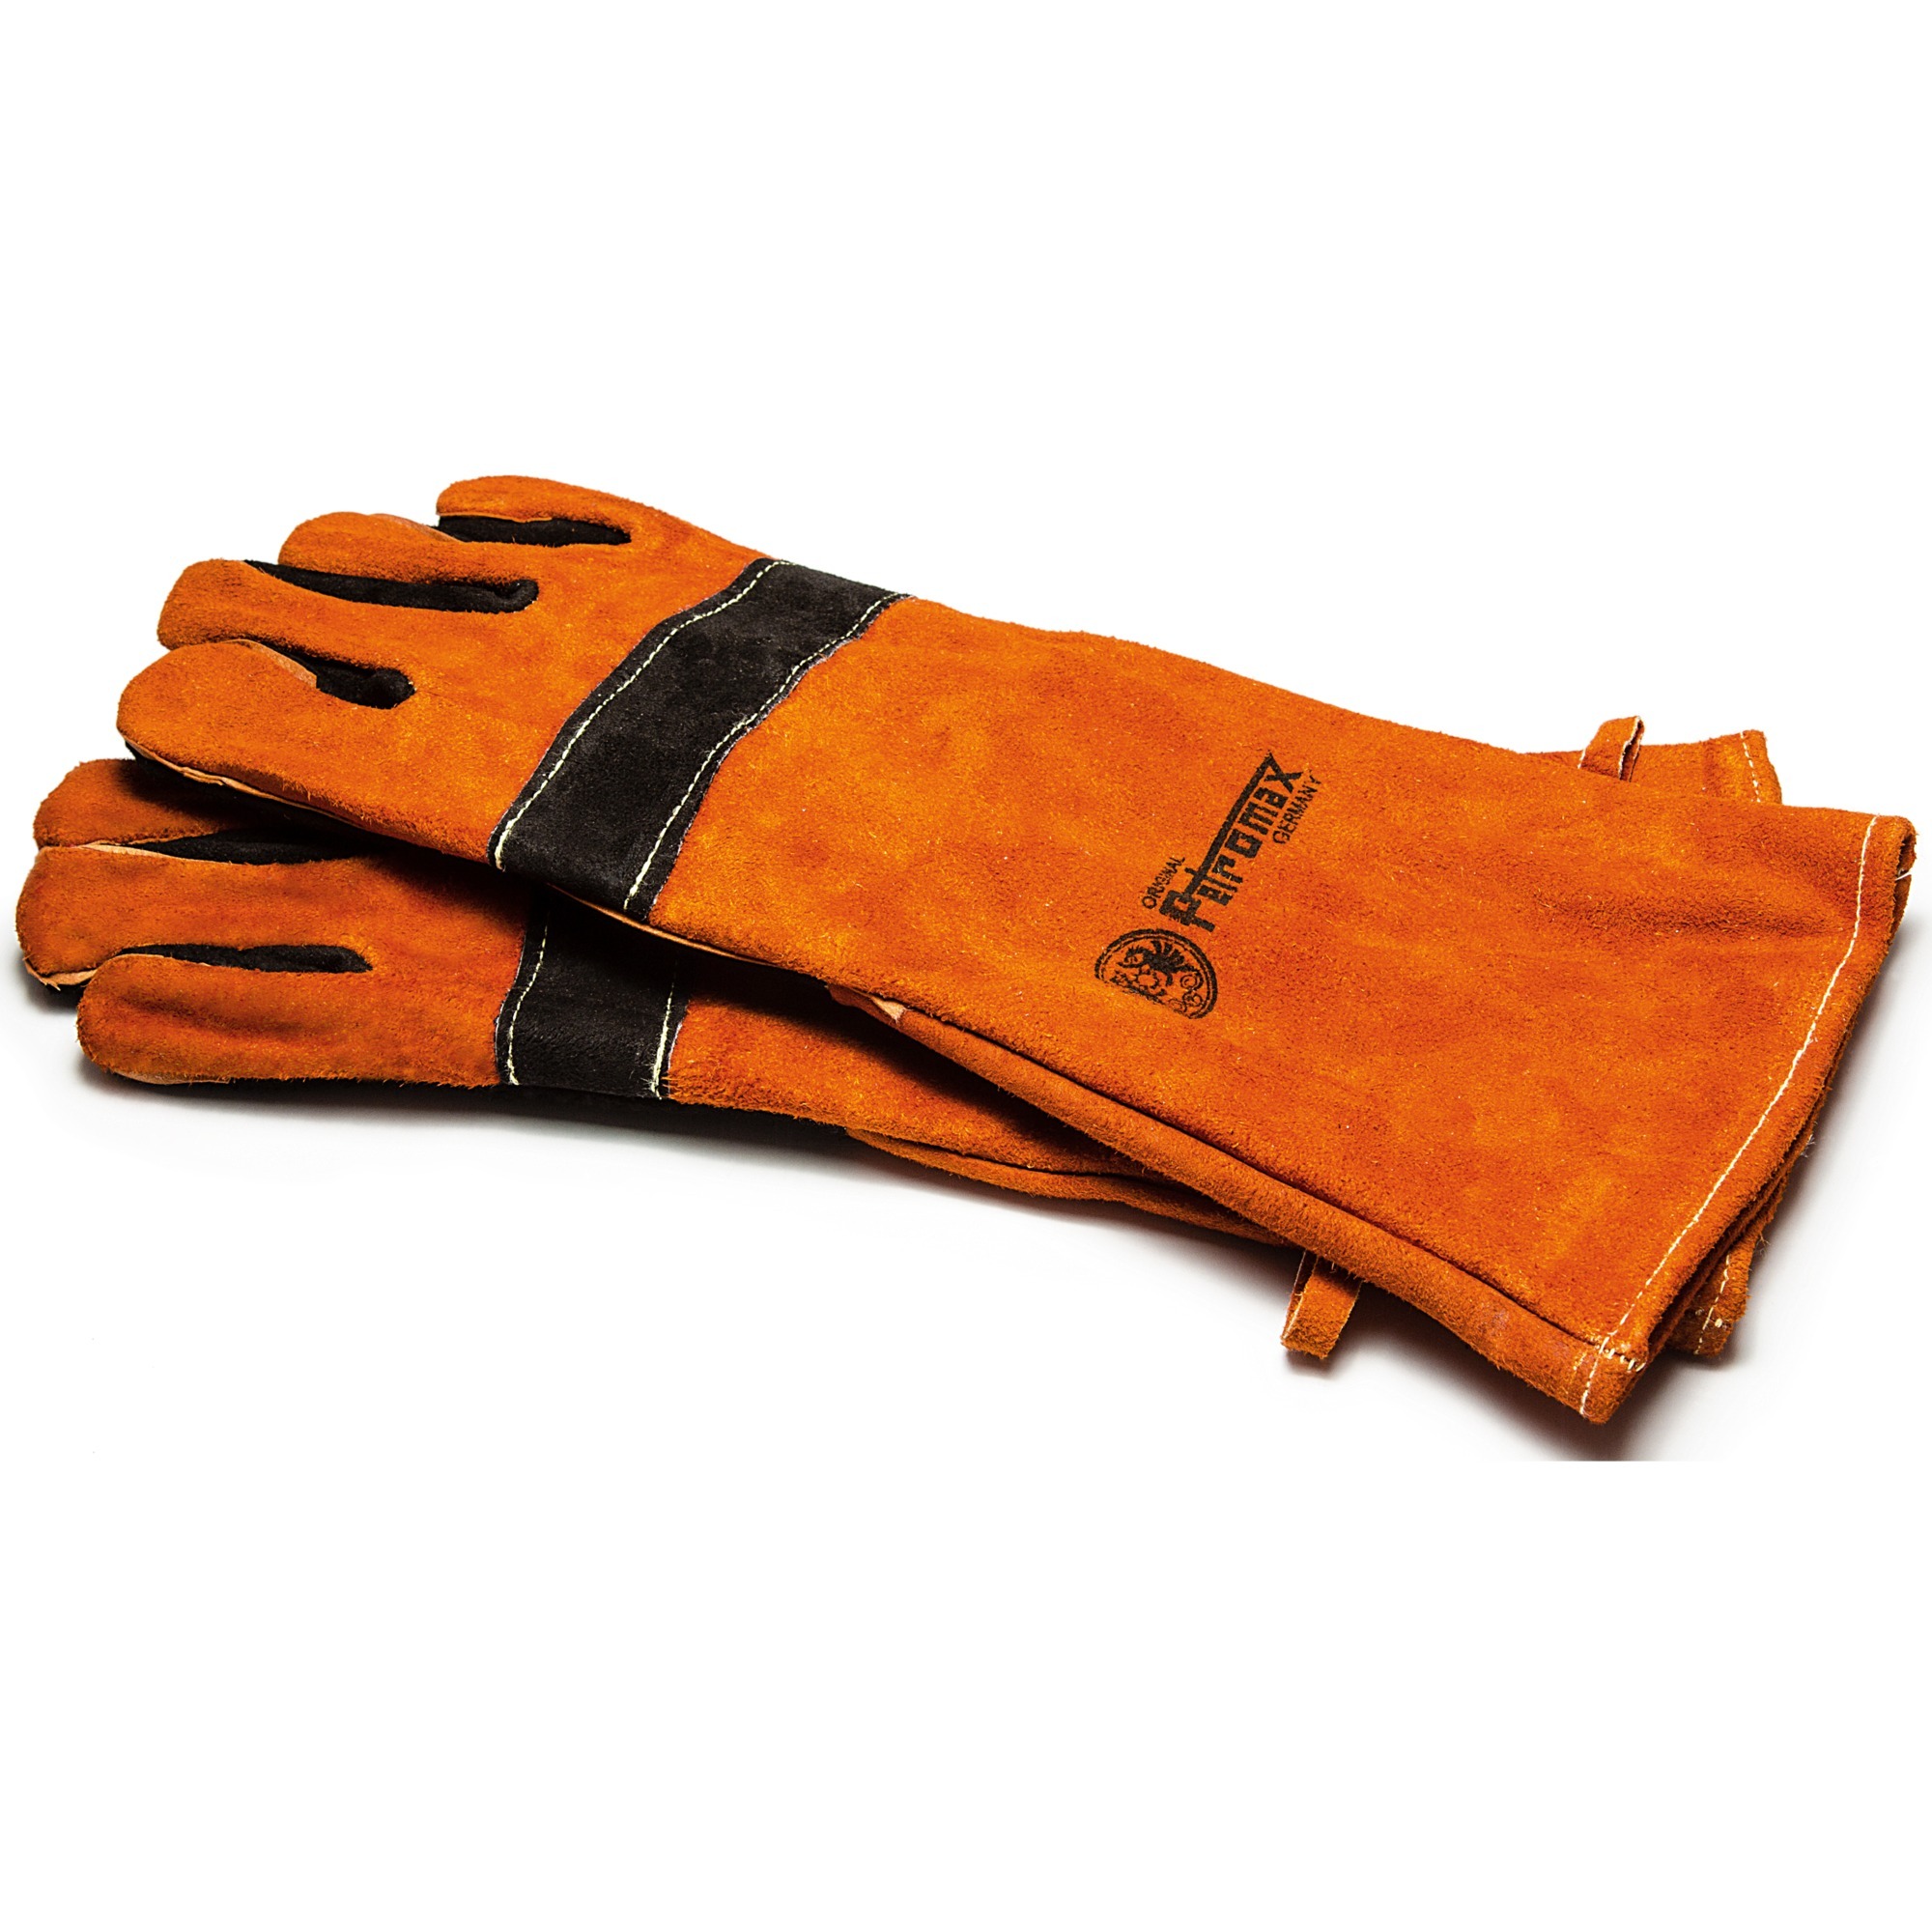 Image of Alternate - Aramid Pro 300 Handschuhe online einkaufen bei Alternate